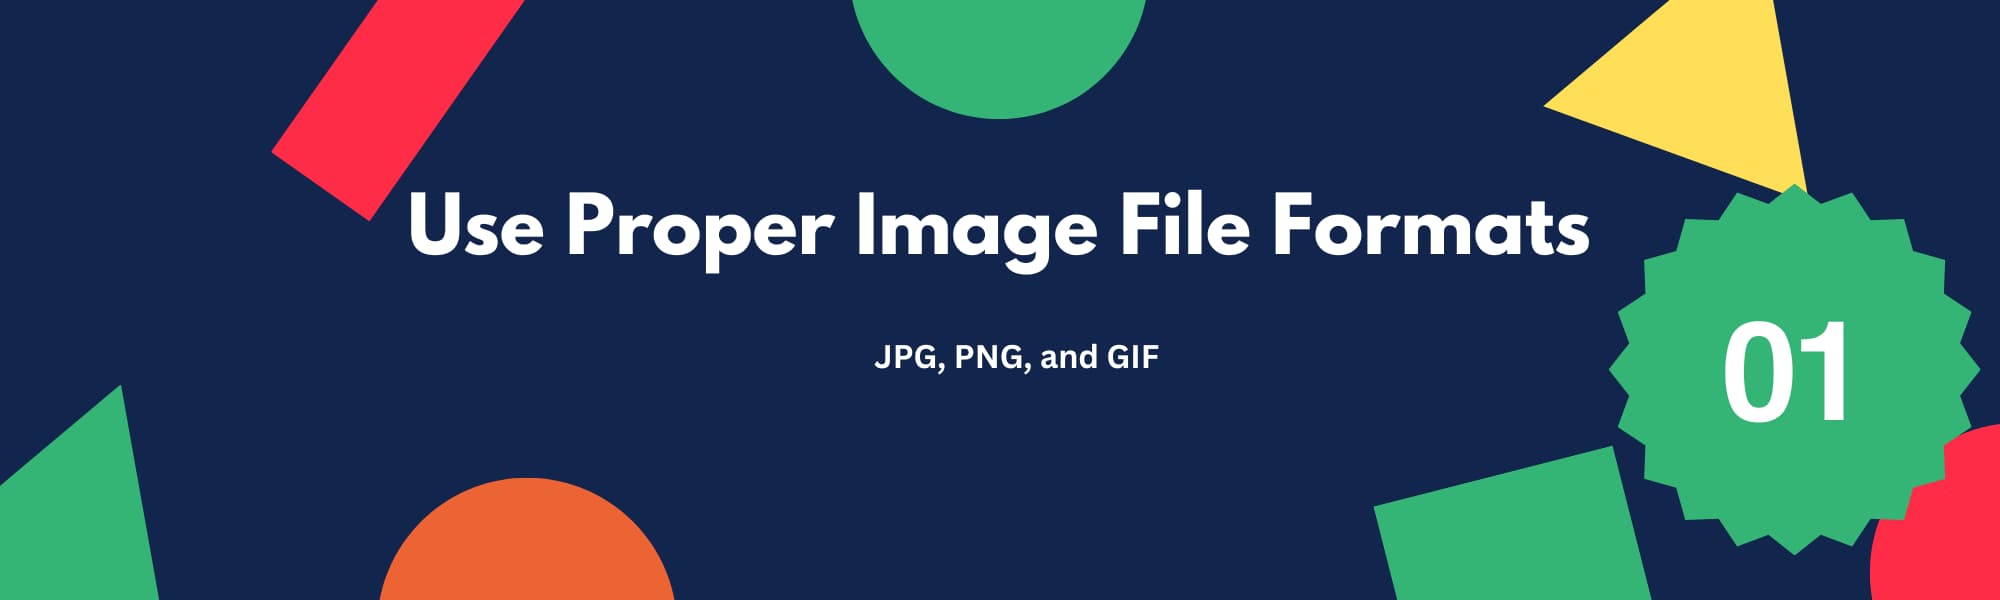 Use Proper Image File Formats